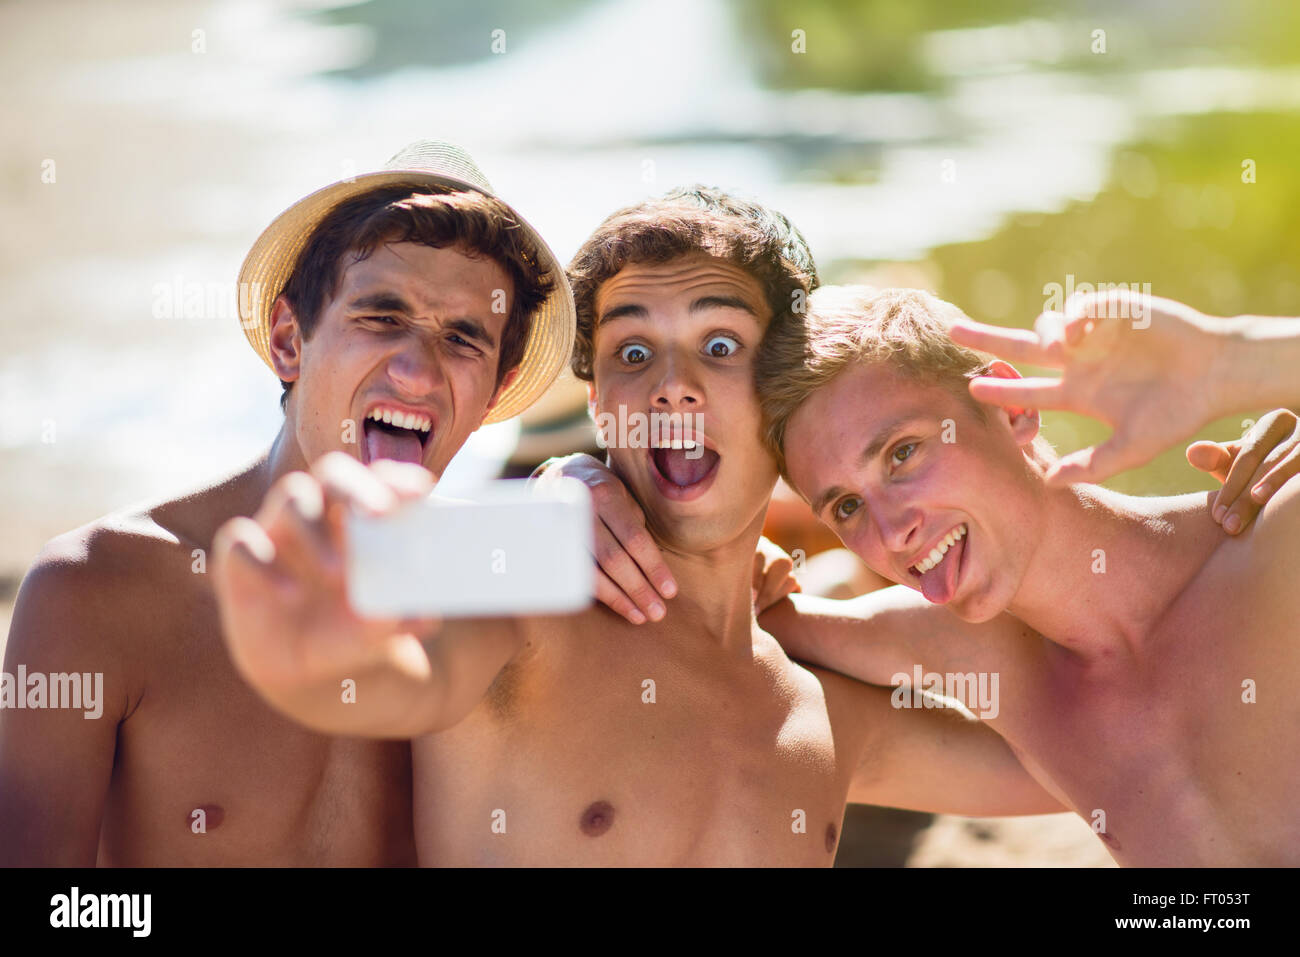 Männer selfie junge Selfie